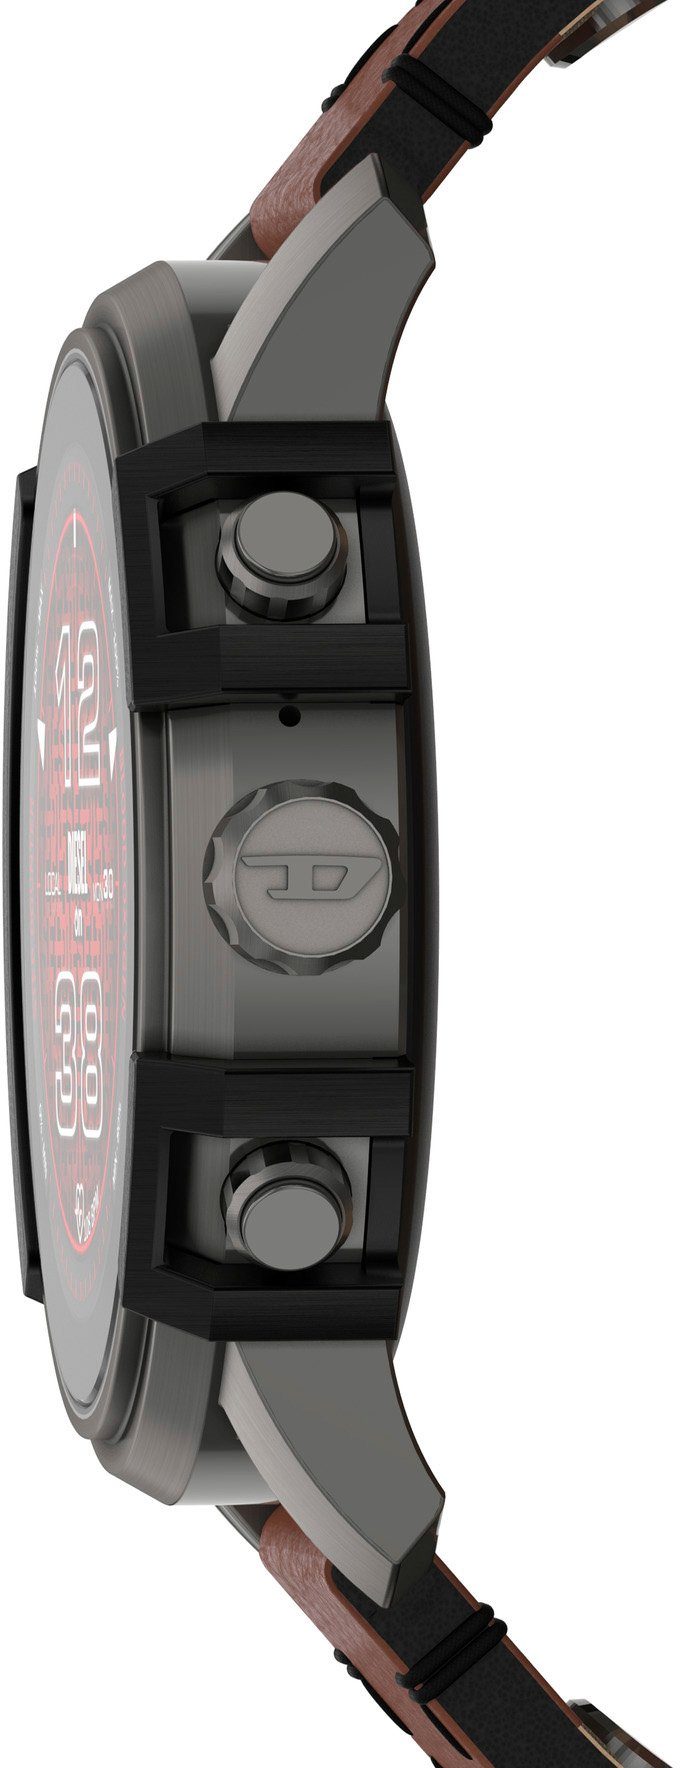 DIESEL ON Diesel Griffed, DZT2043 Smartwatch (Wear OS by Google)